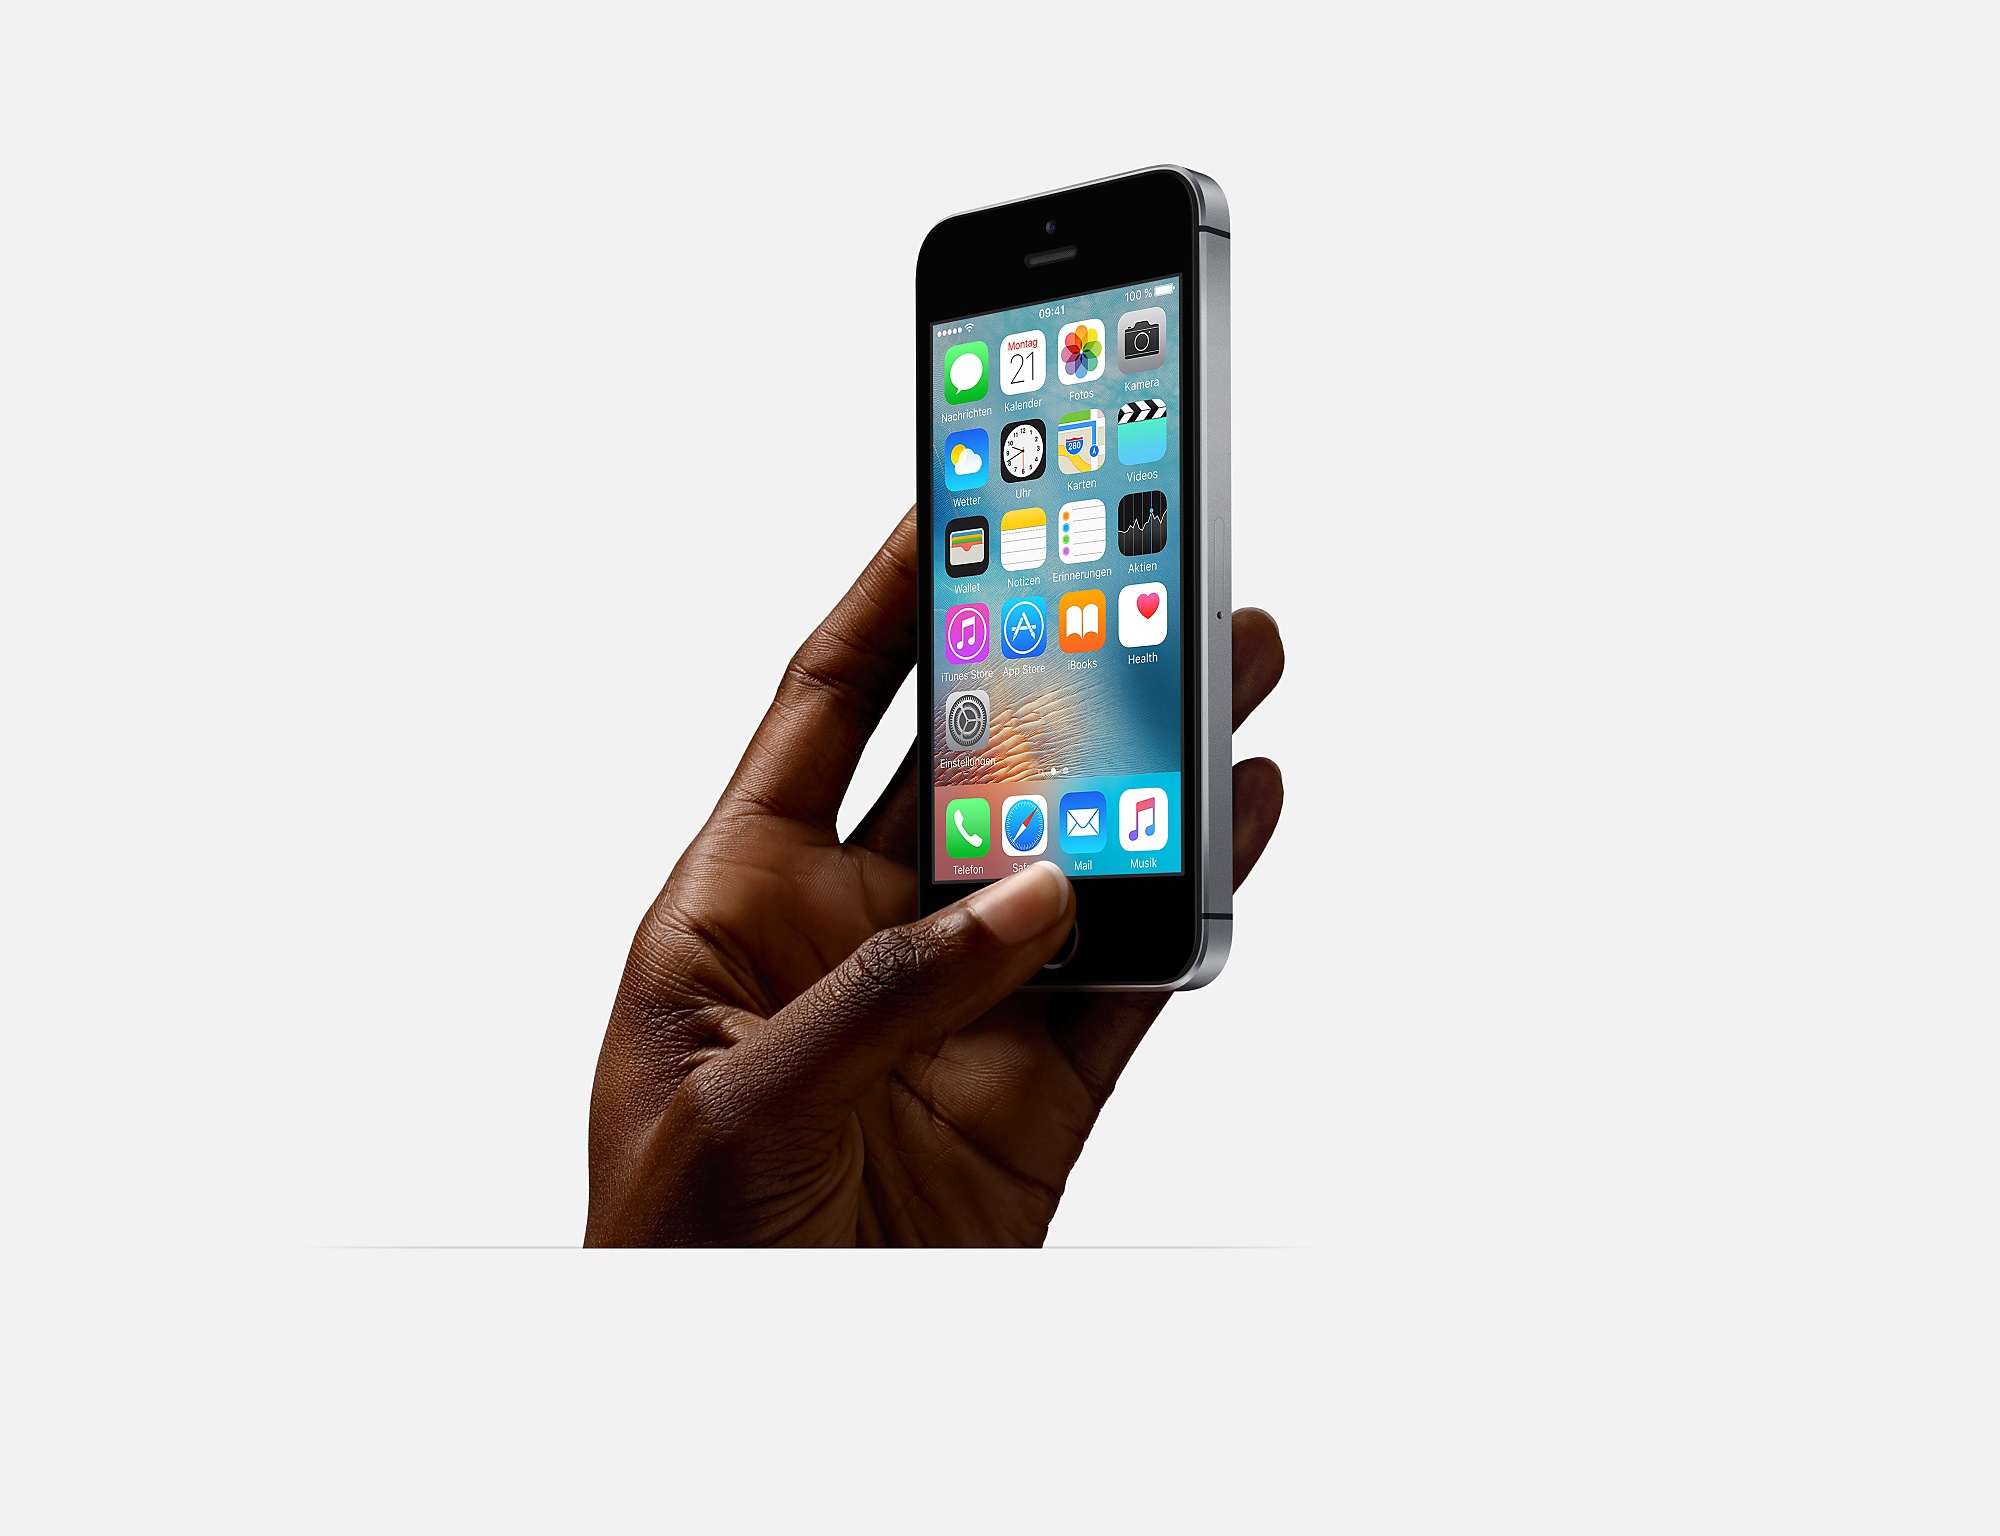 Billig zu haben – ohne Vertrag: Das iPhone SE 128 GB zum Sparpreis für nur 409 Euro